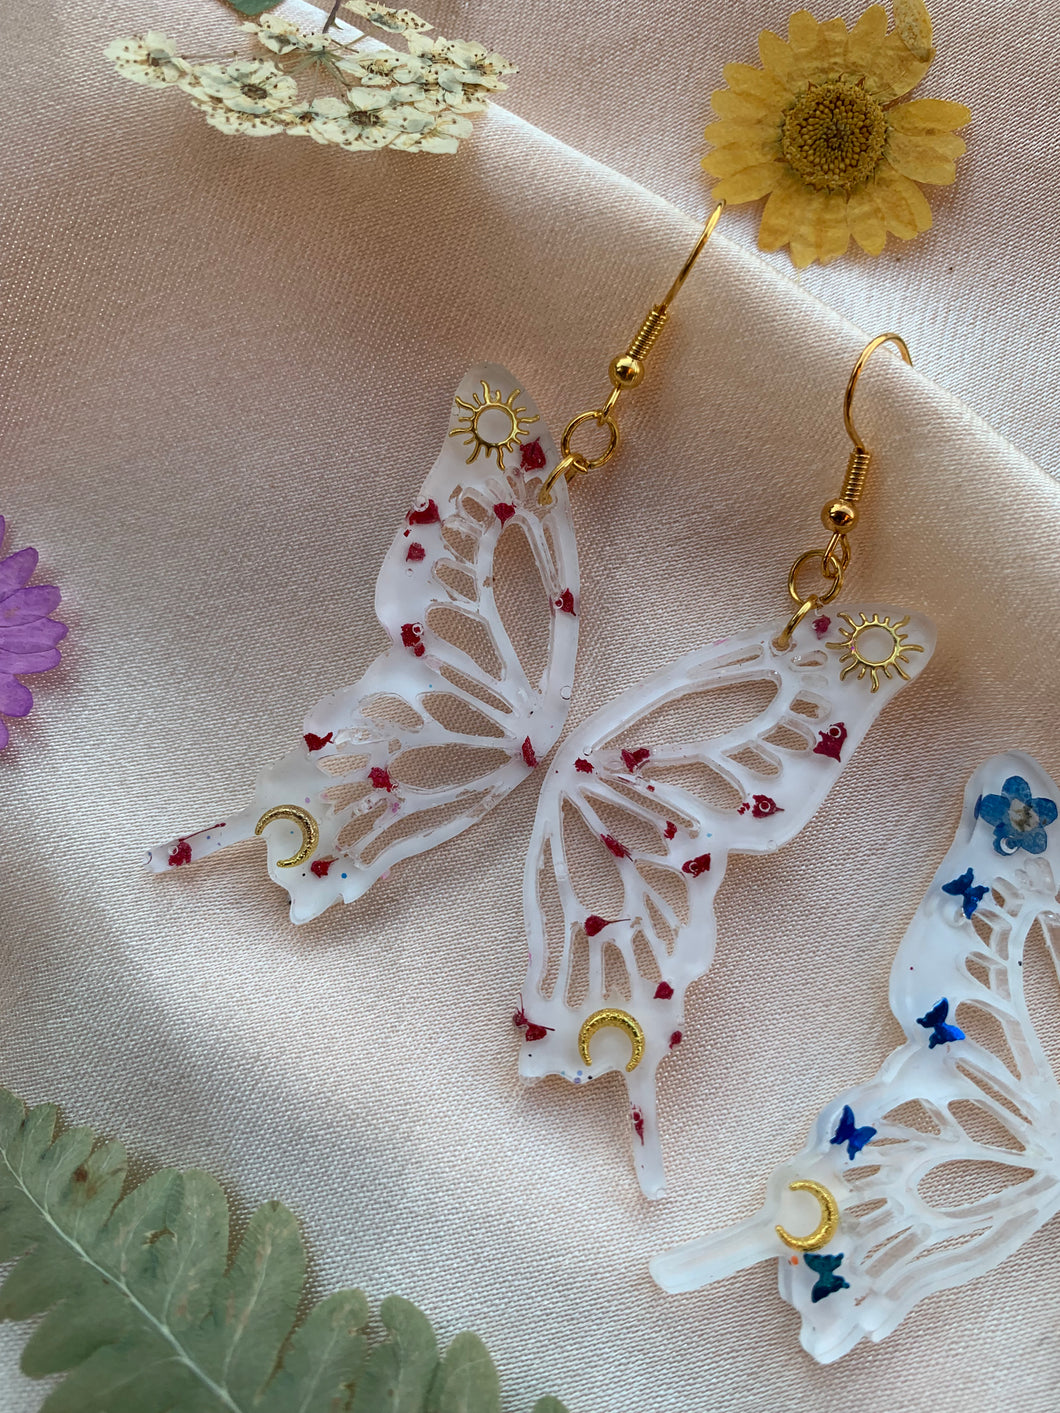 Gold hook flower butterfly wing earrings